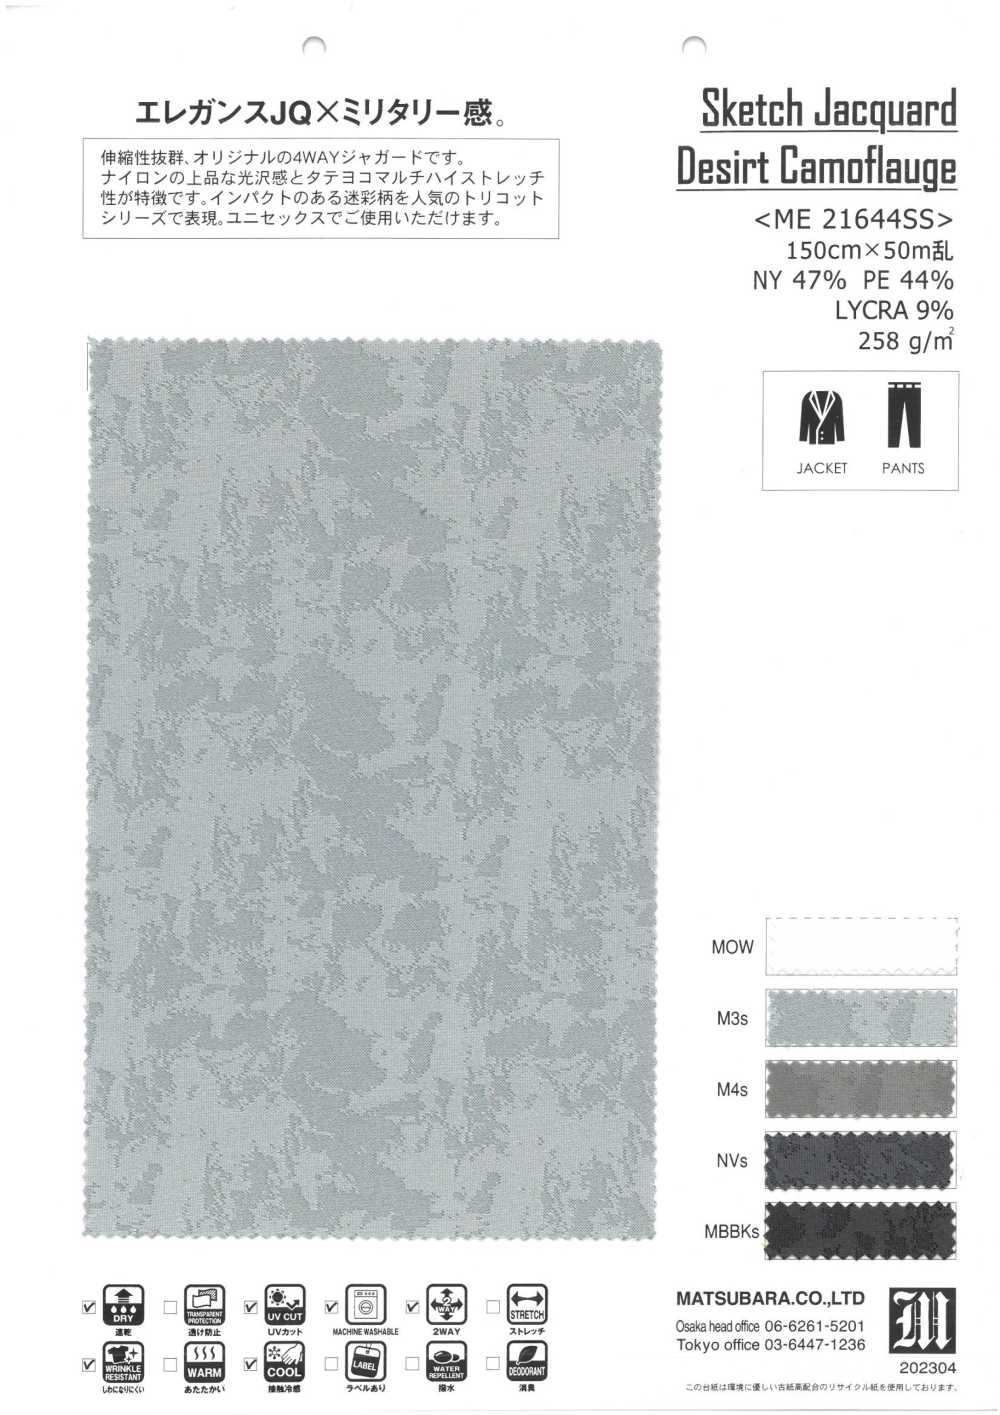 ME21644SS Sketch Jacquard Desir Camoflauge[Fabrica Textil] Matsubara